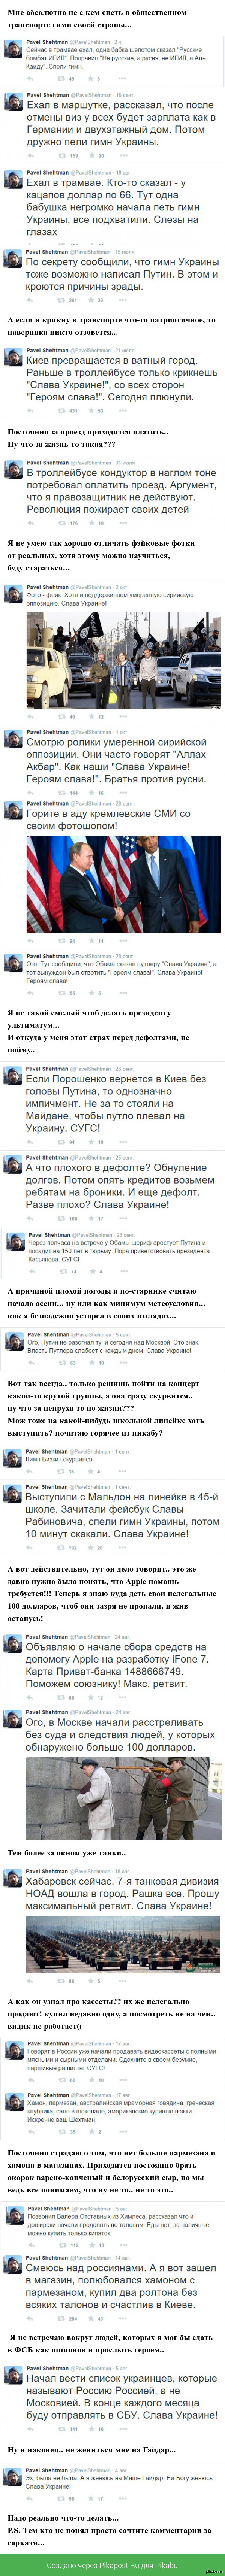 Как я осознал что живу очень скучно и уныло... (( Я просто зашел на страничку твиттера. Как он сам себя называет, Гражданскоий и экологический активист. Советник Президента и министра обороны Украины.